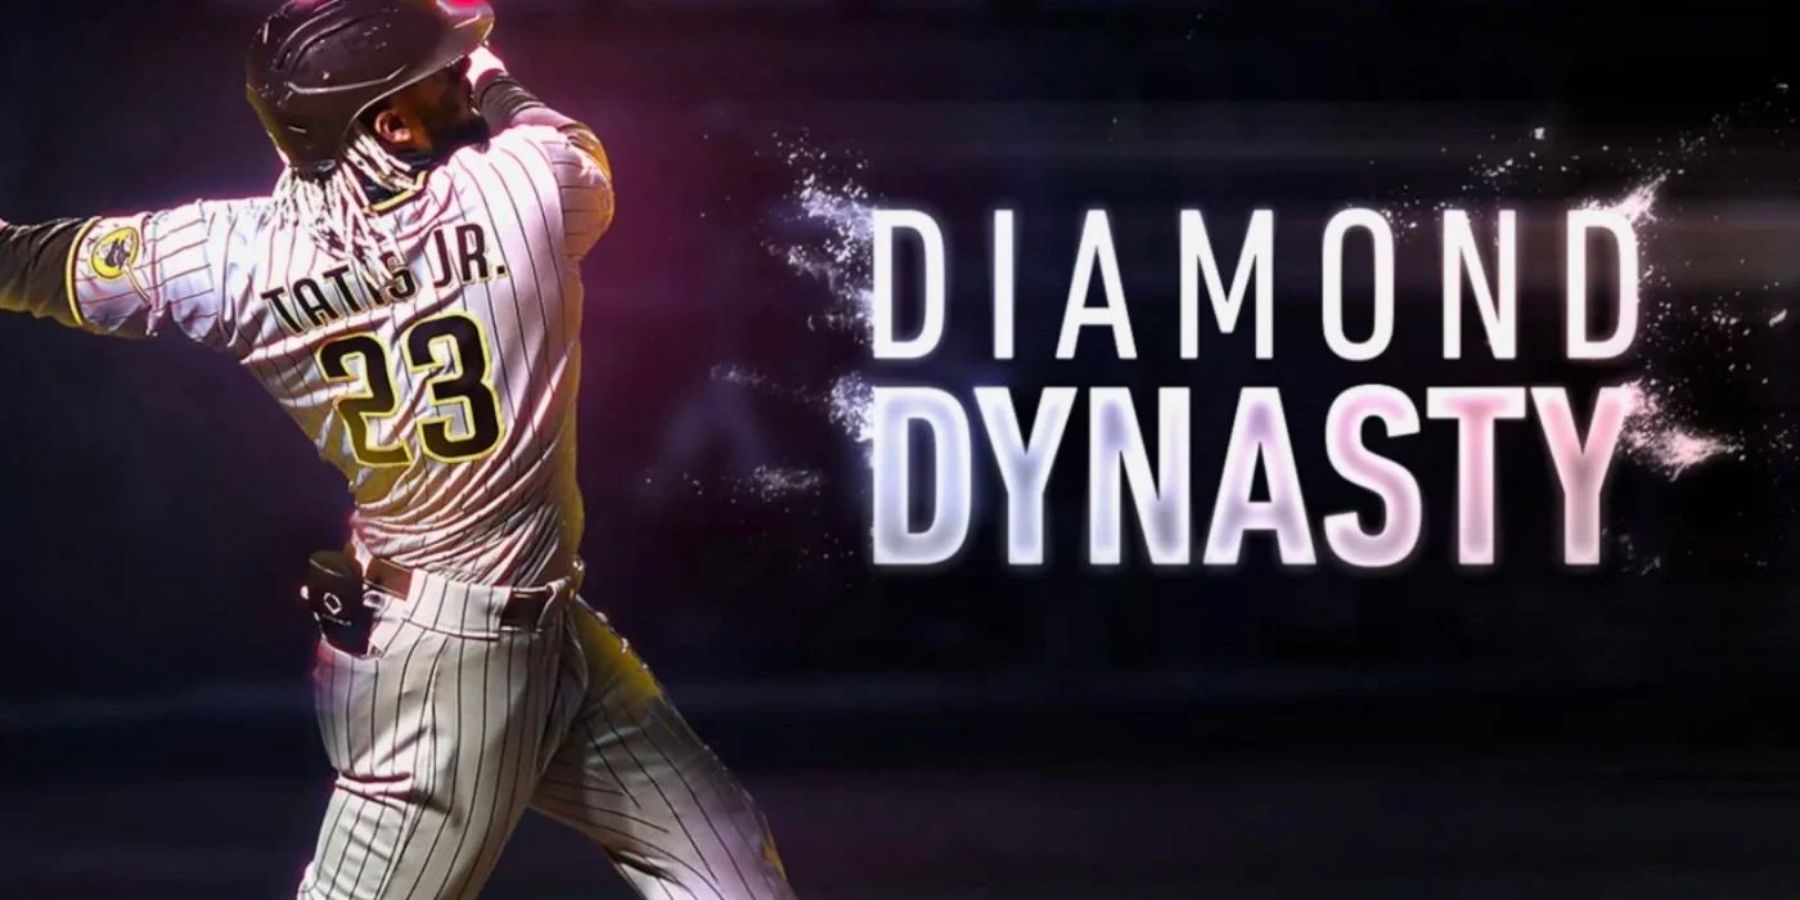 MLB The Show 22: Best Diamond Dynasty Card At Each Position